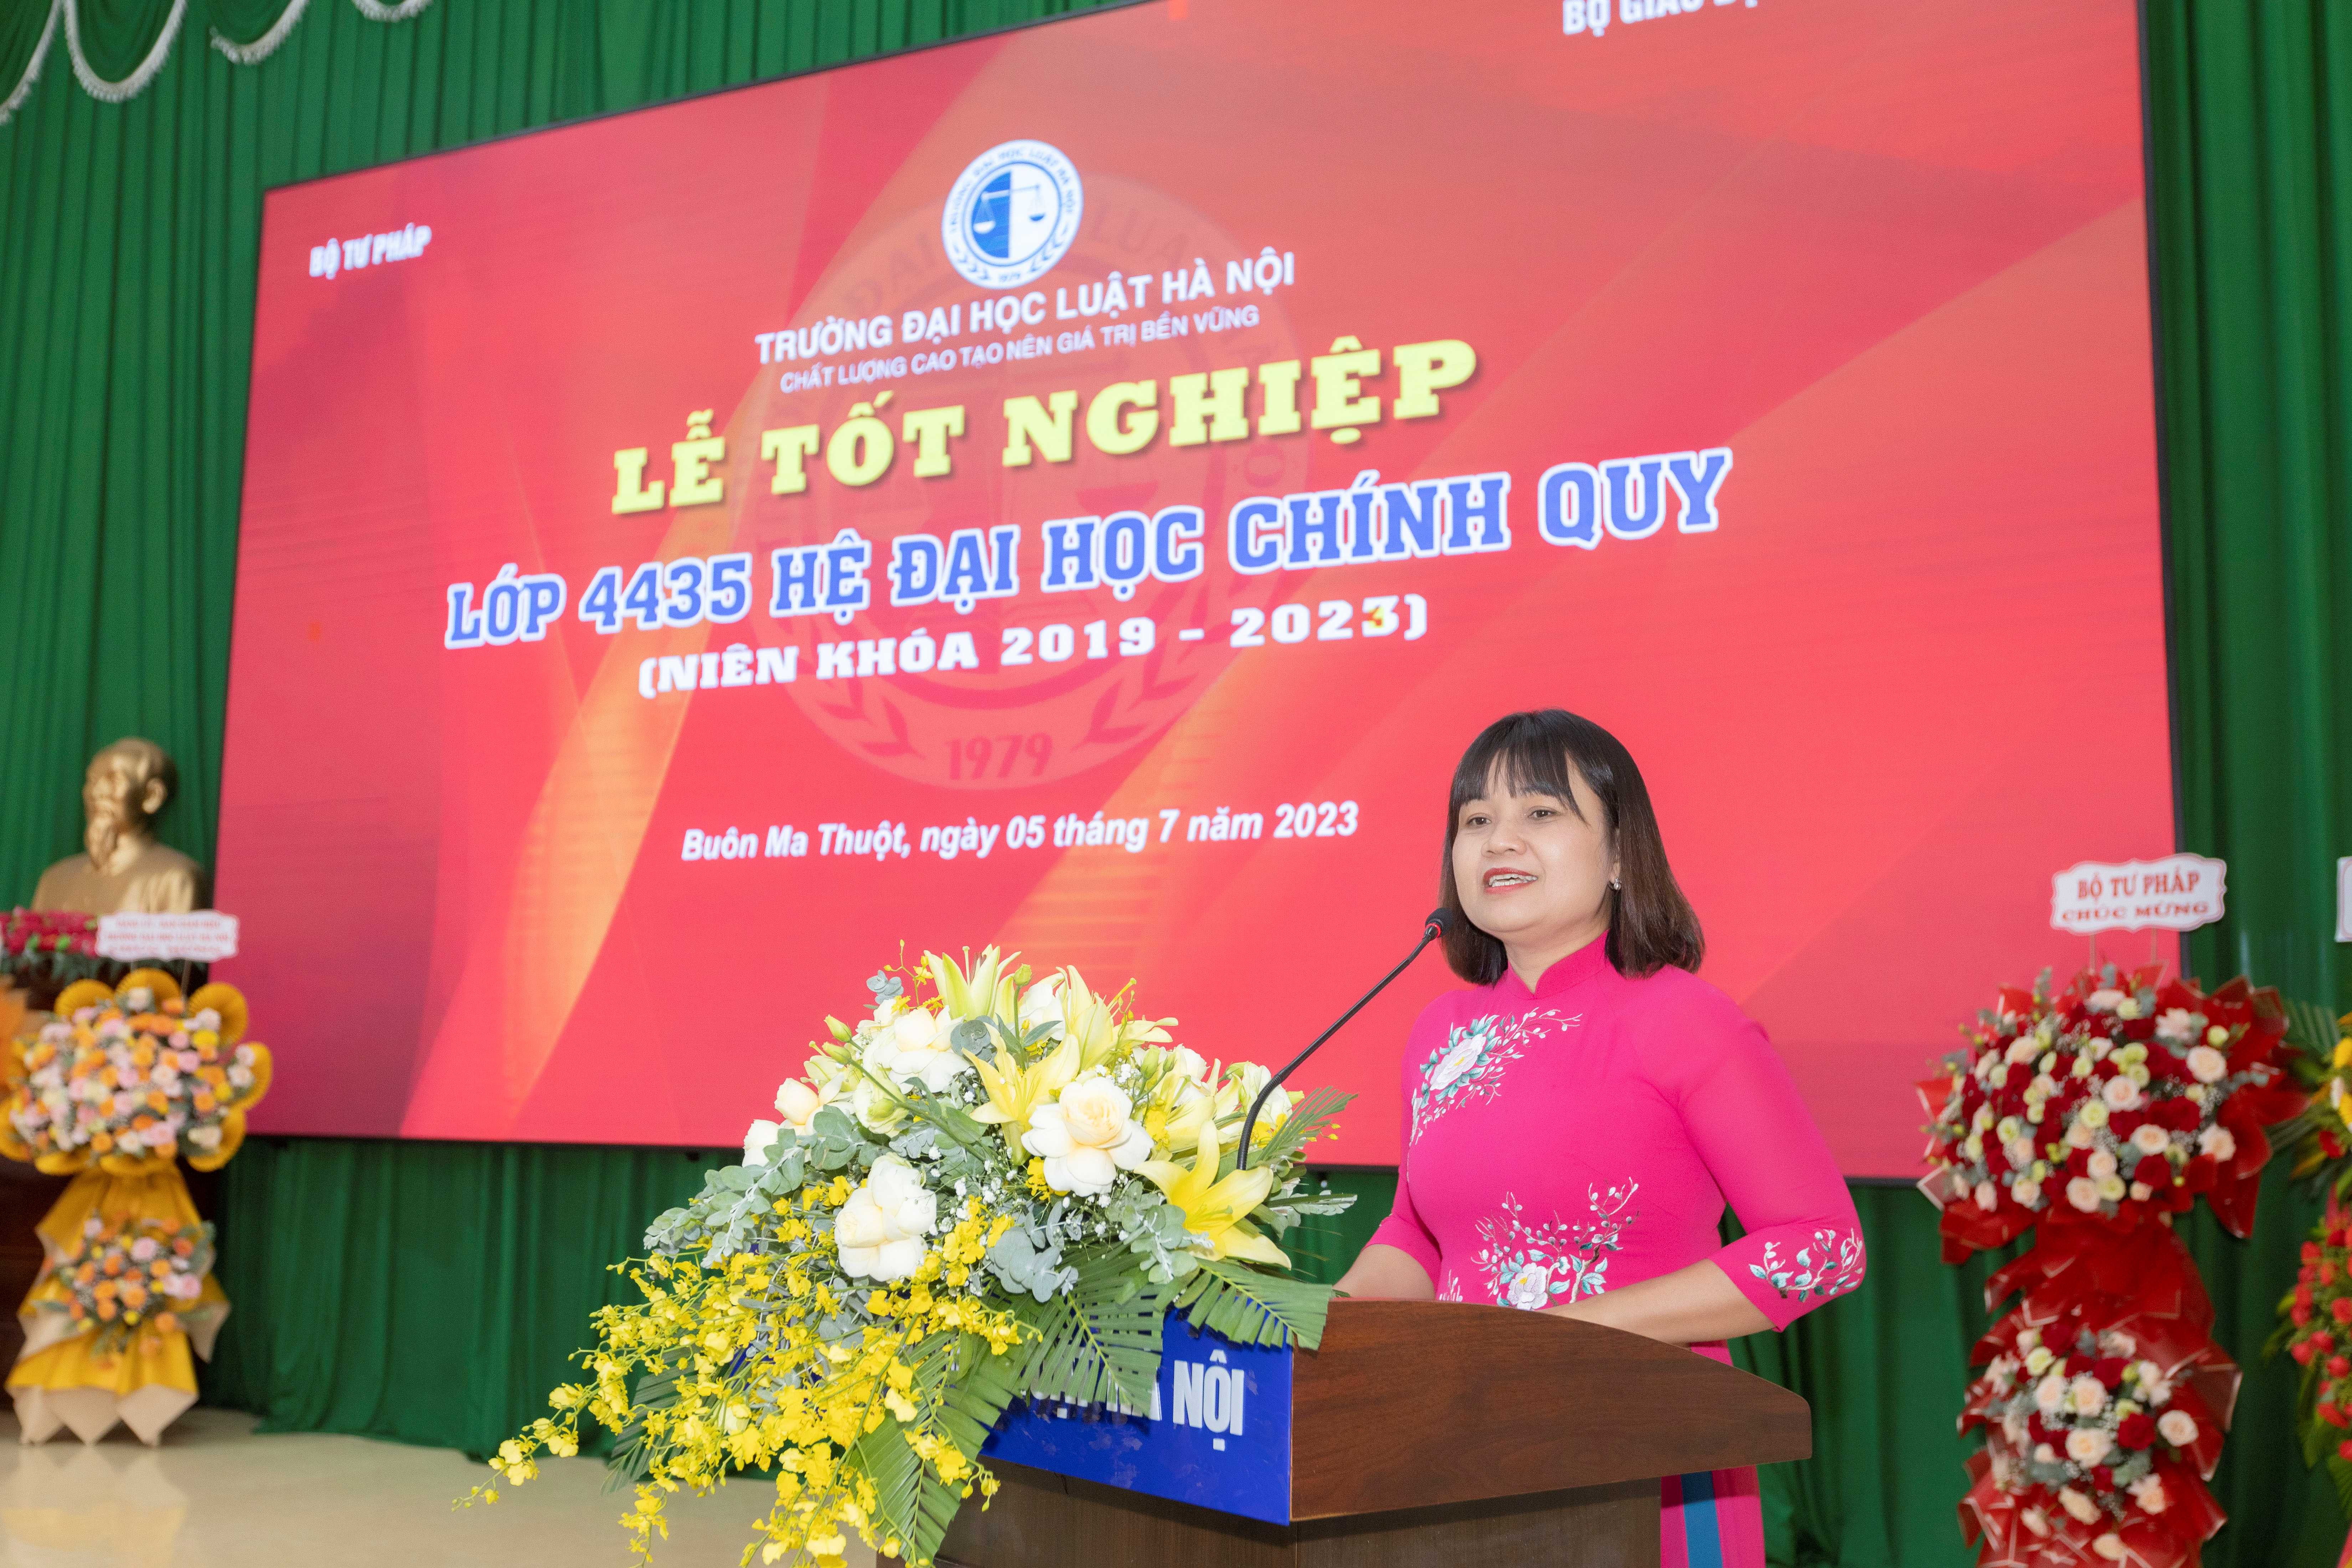 Trường Đại học Luật Hà Nội trao 51 bằng cử nhân chính quy đầu tiên tại Đắk Lắk